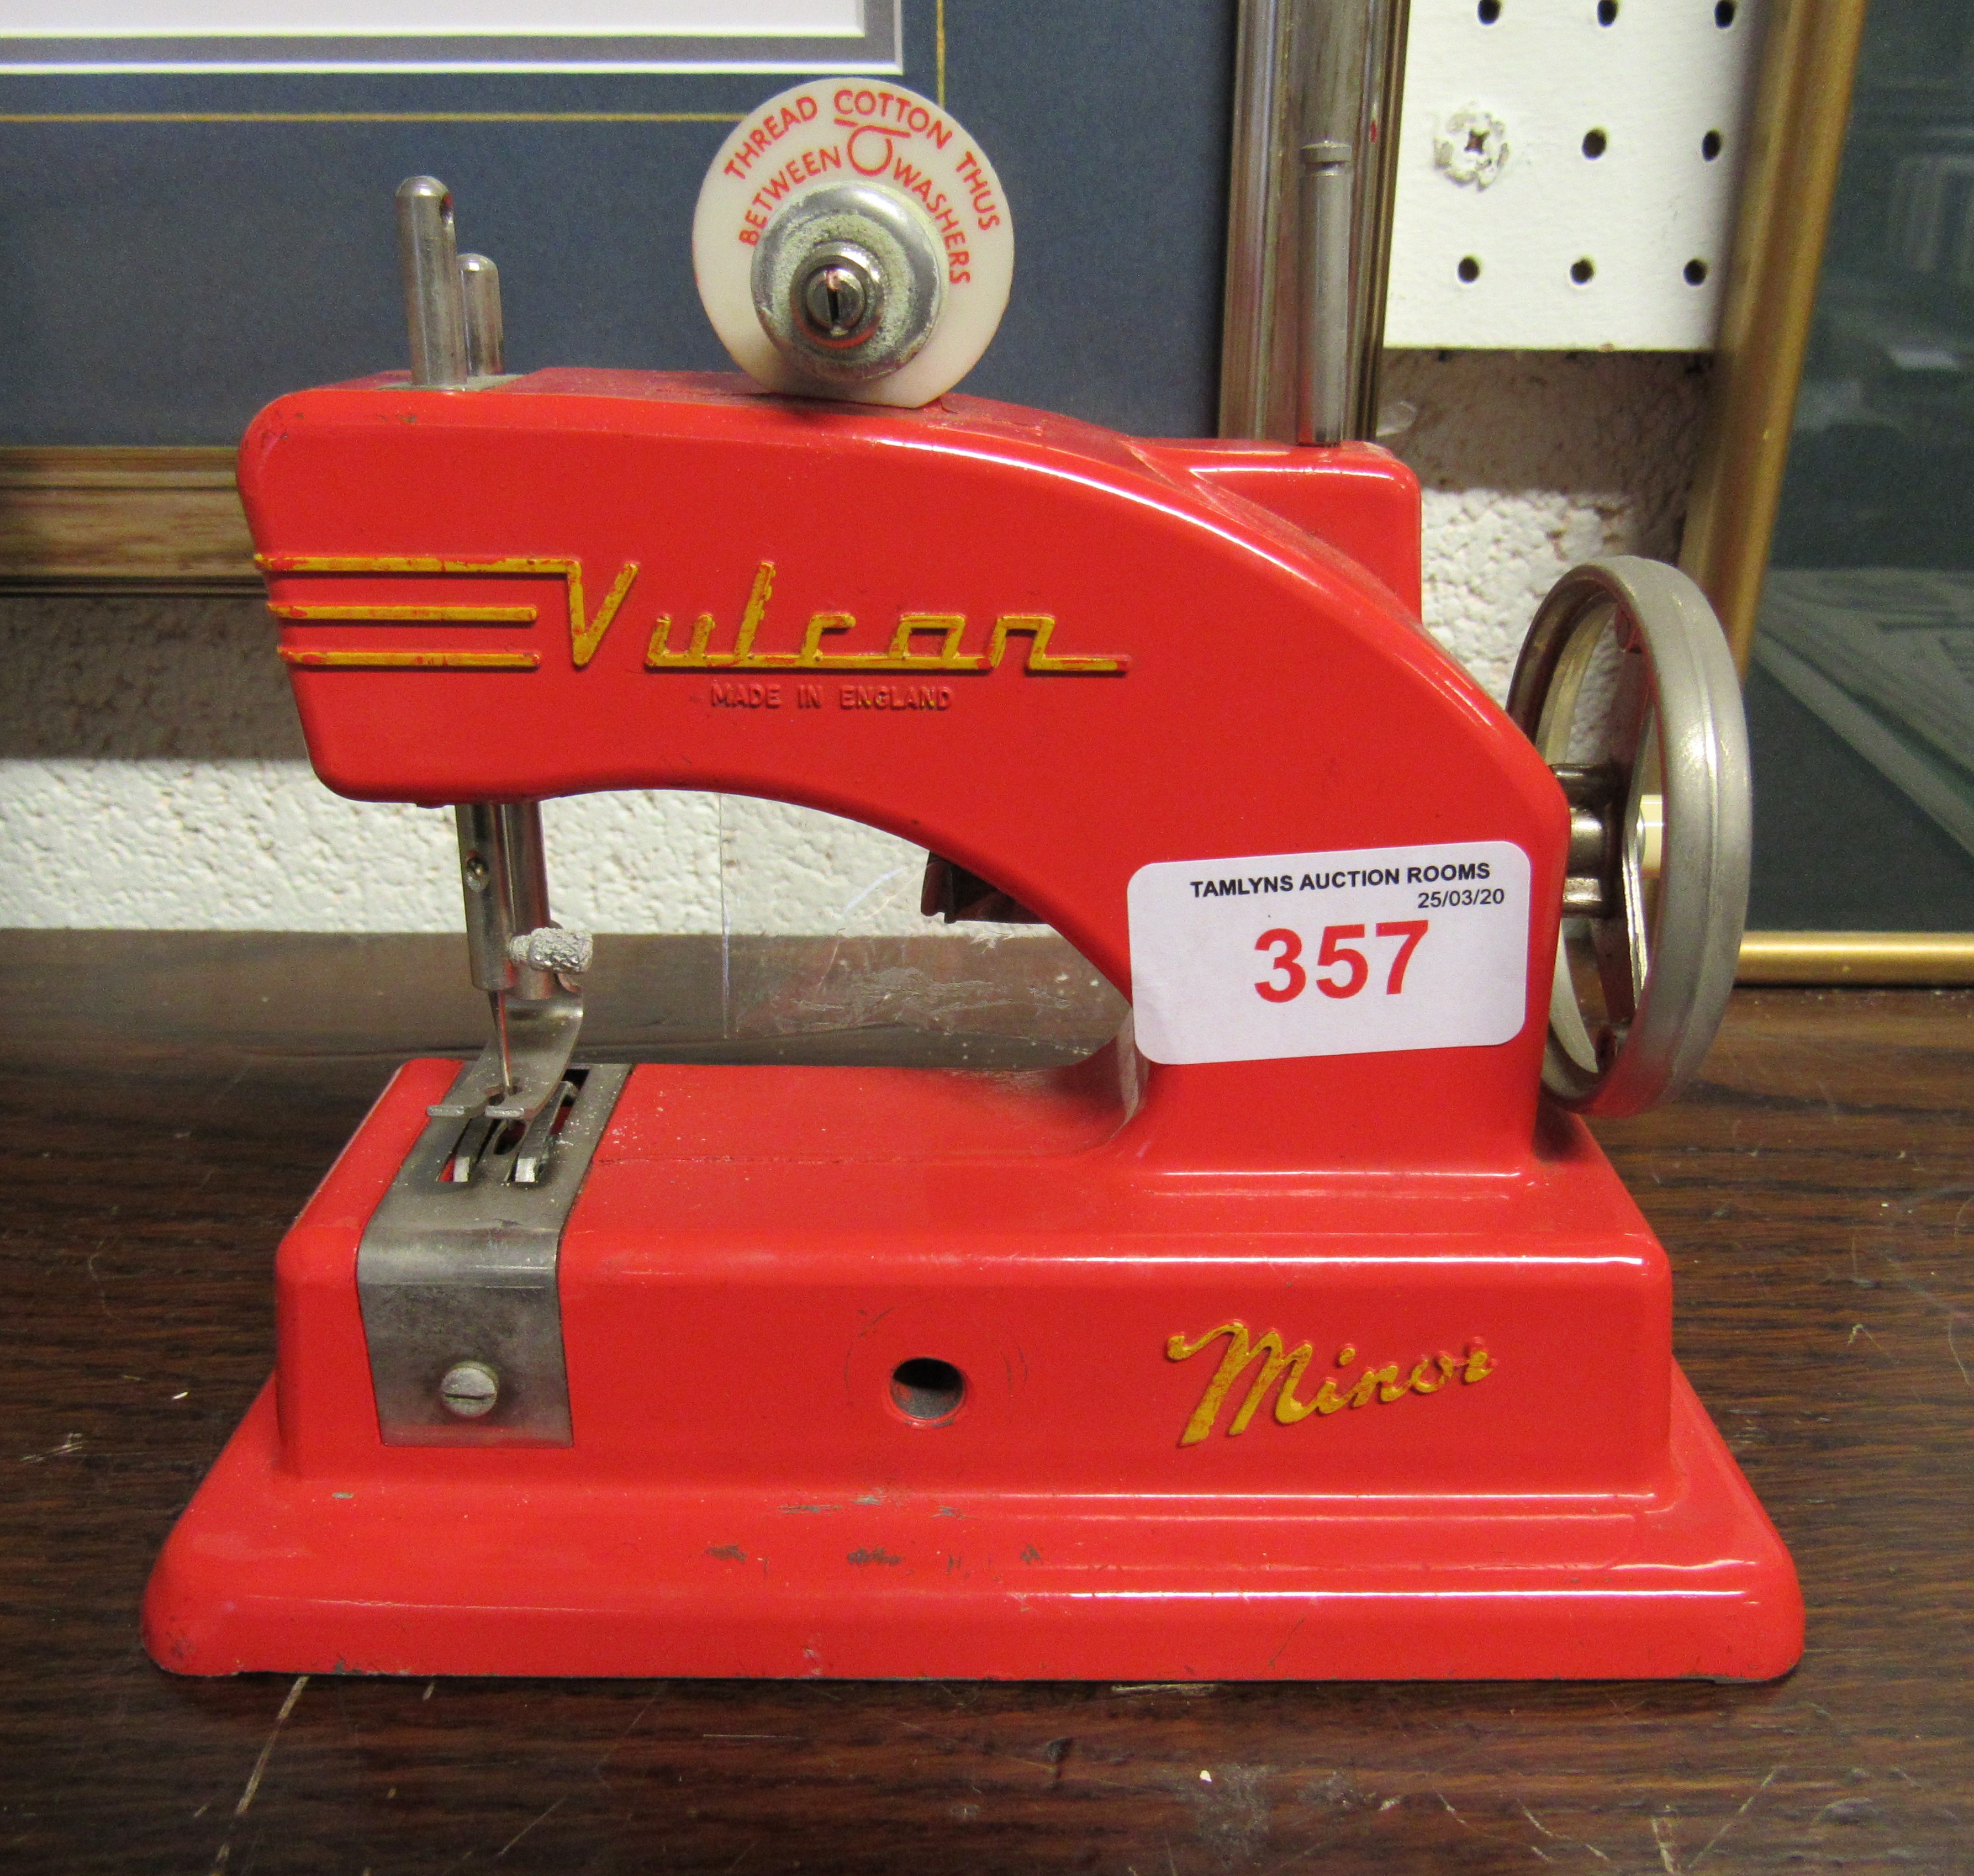 A children's tinplate Vulcan red sewing machine